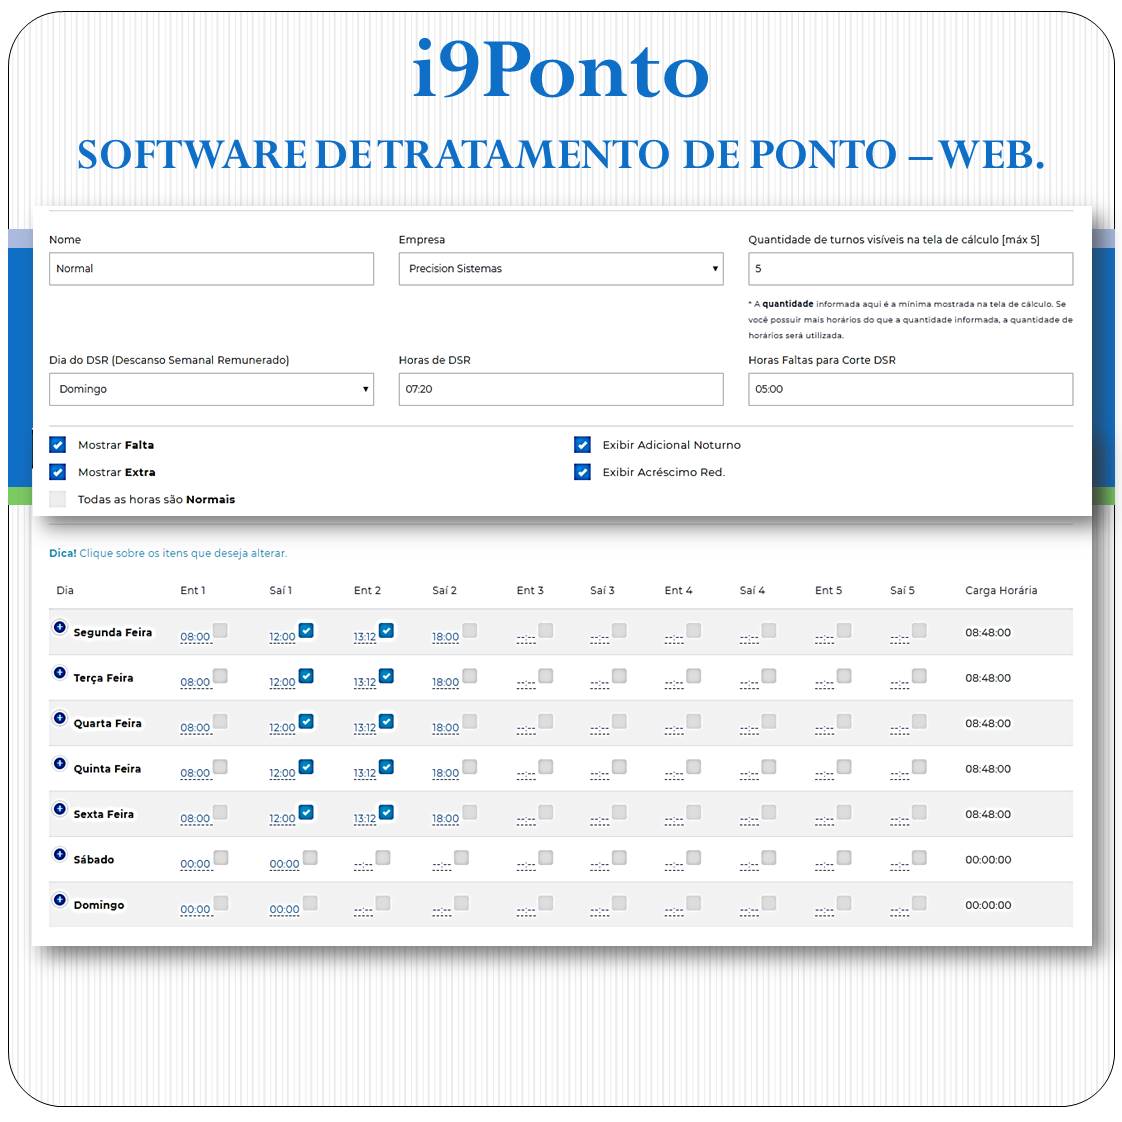 Software de Tratamento de Ponto Web - i9Ponto